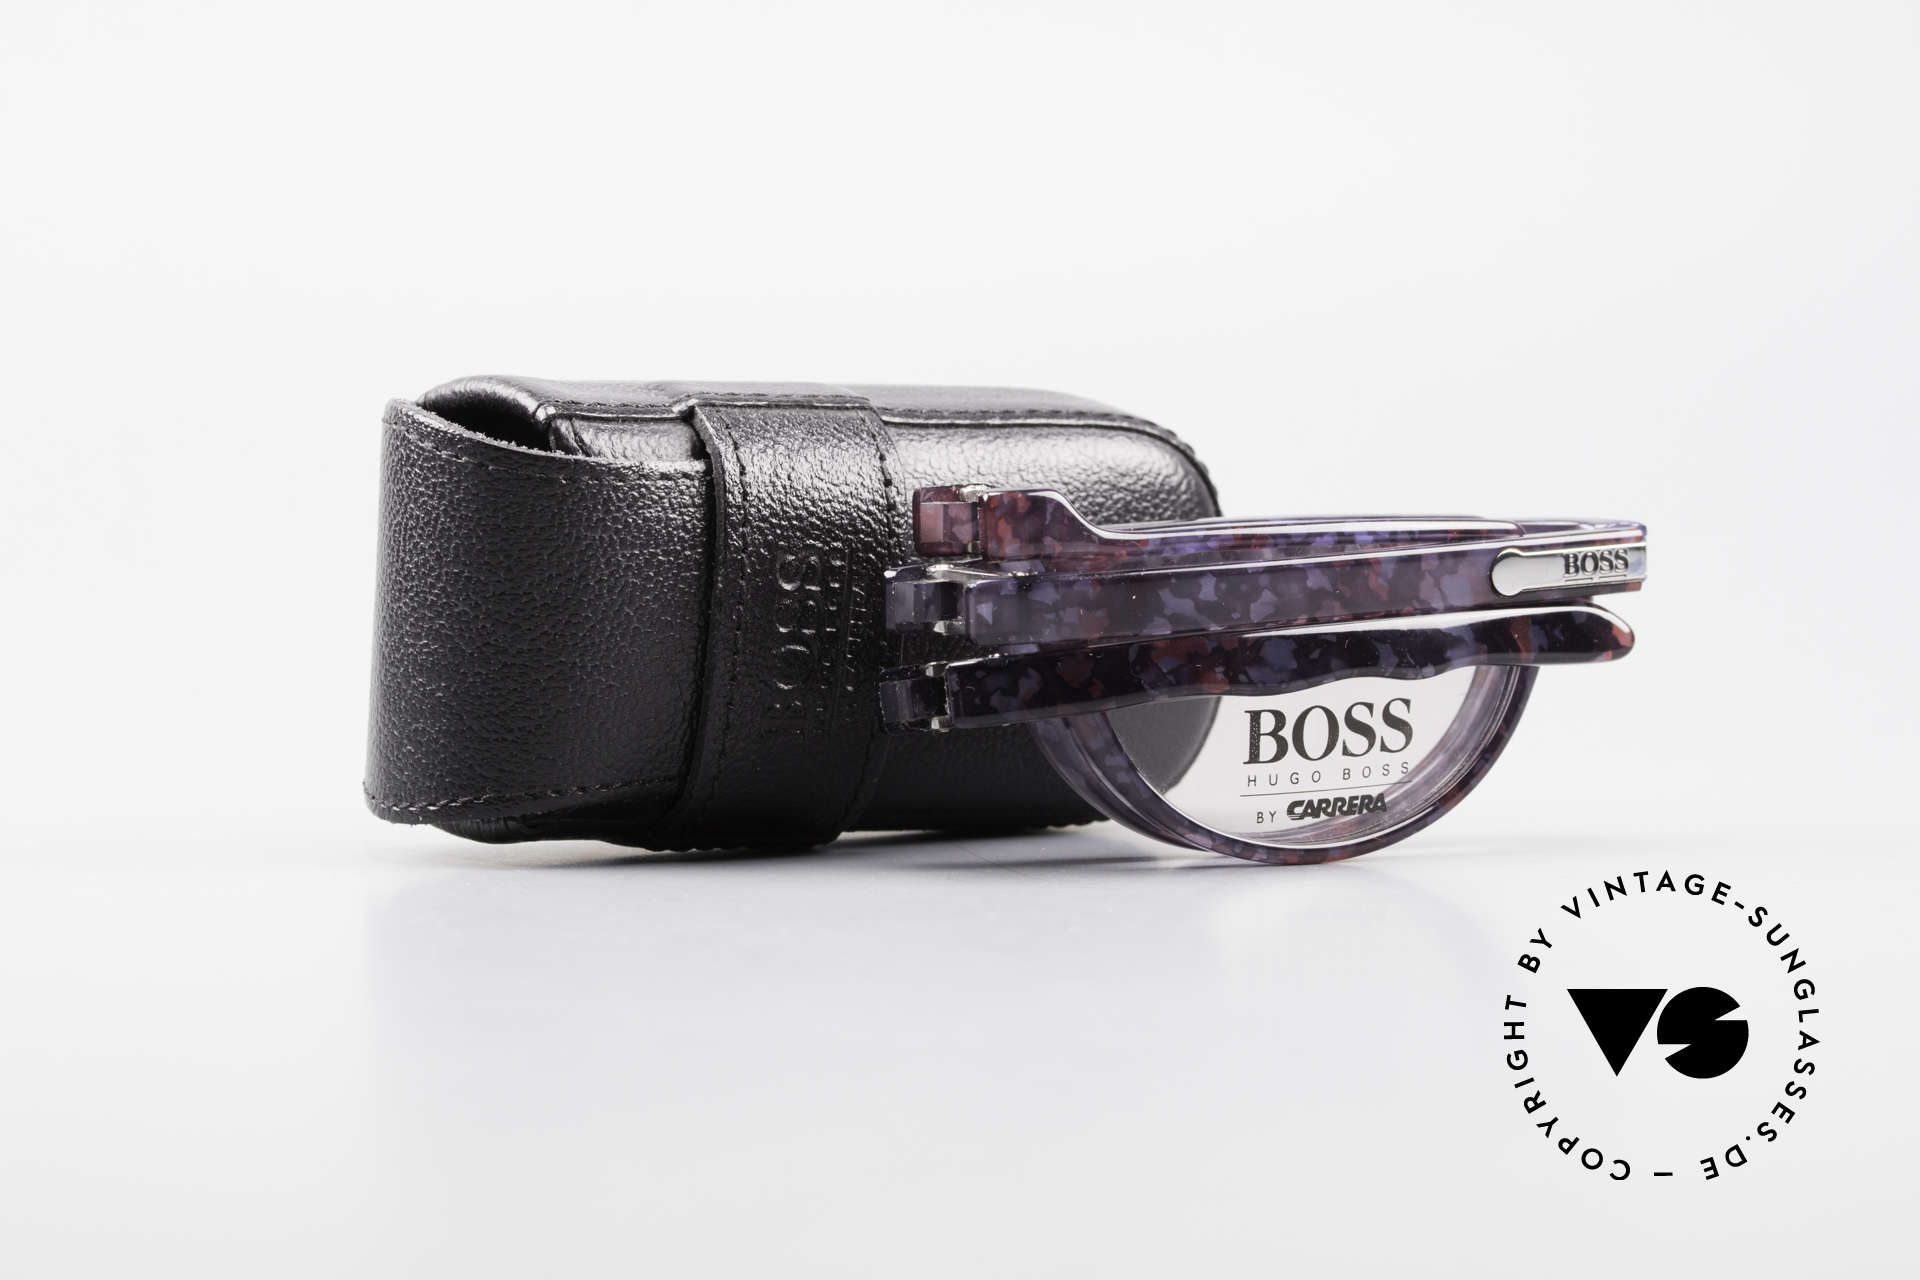 BOSS 5103 Folding Reading Eyeglasses, Size: medium, Made for Men and Women